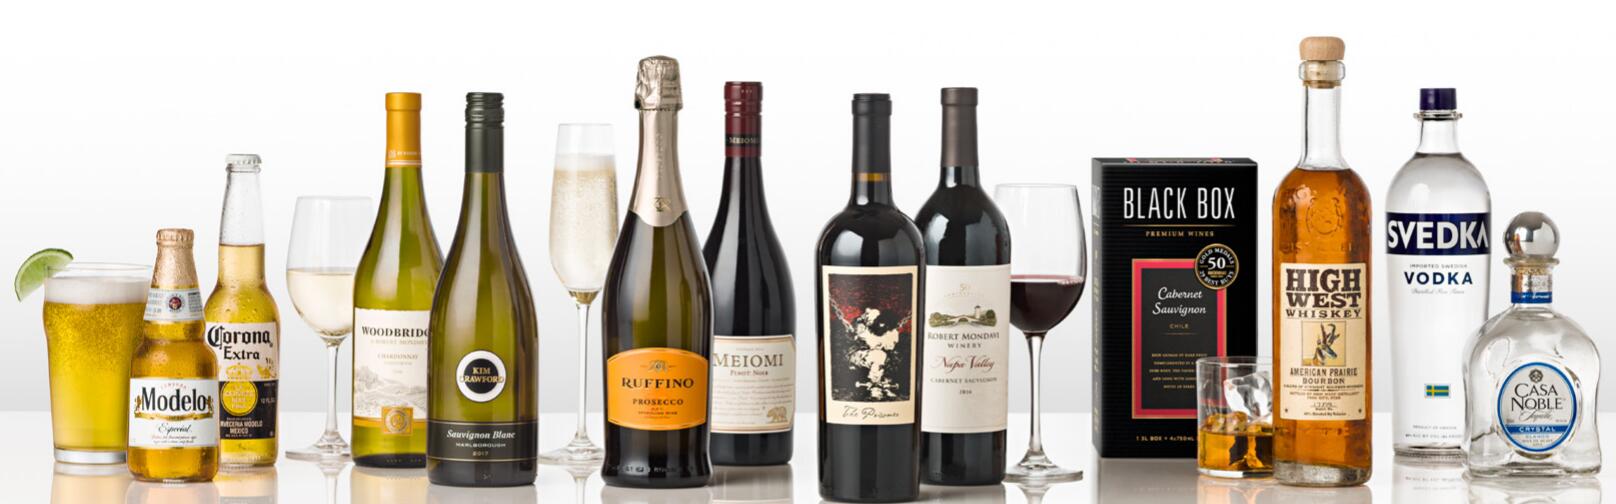 星座总体与美誉葡萄酒业在欧洲市场上“清静散漫”